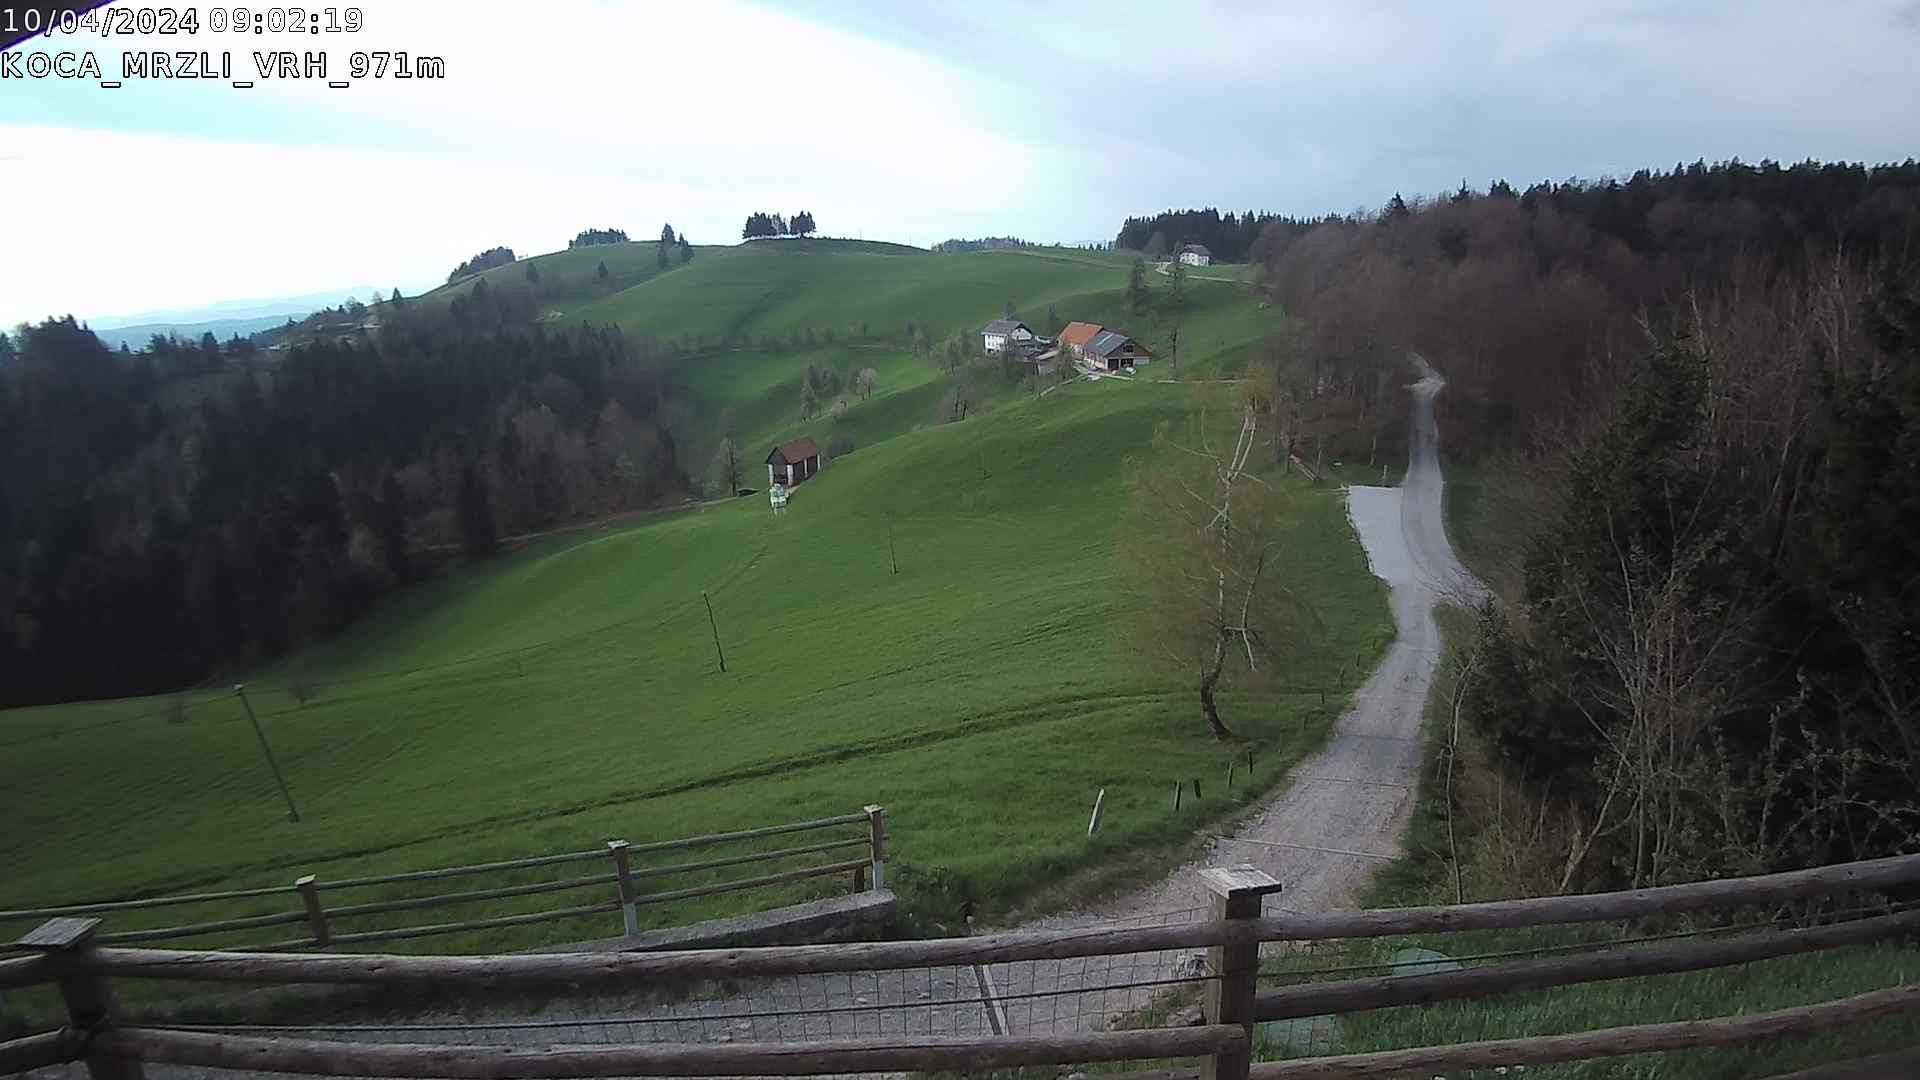 time-lapse frame, Koča Mrzli Vrh webcam